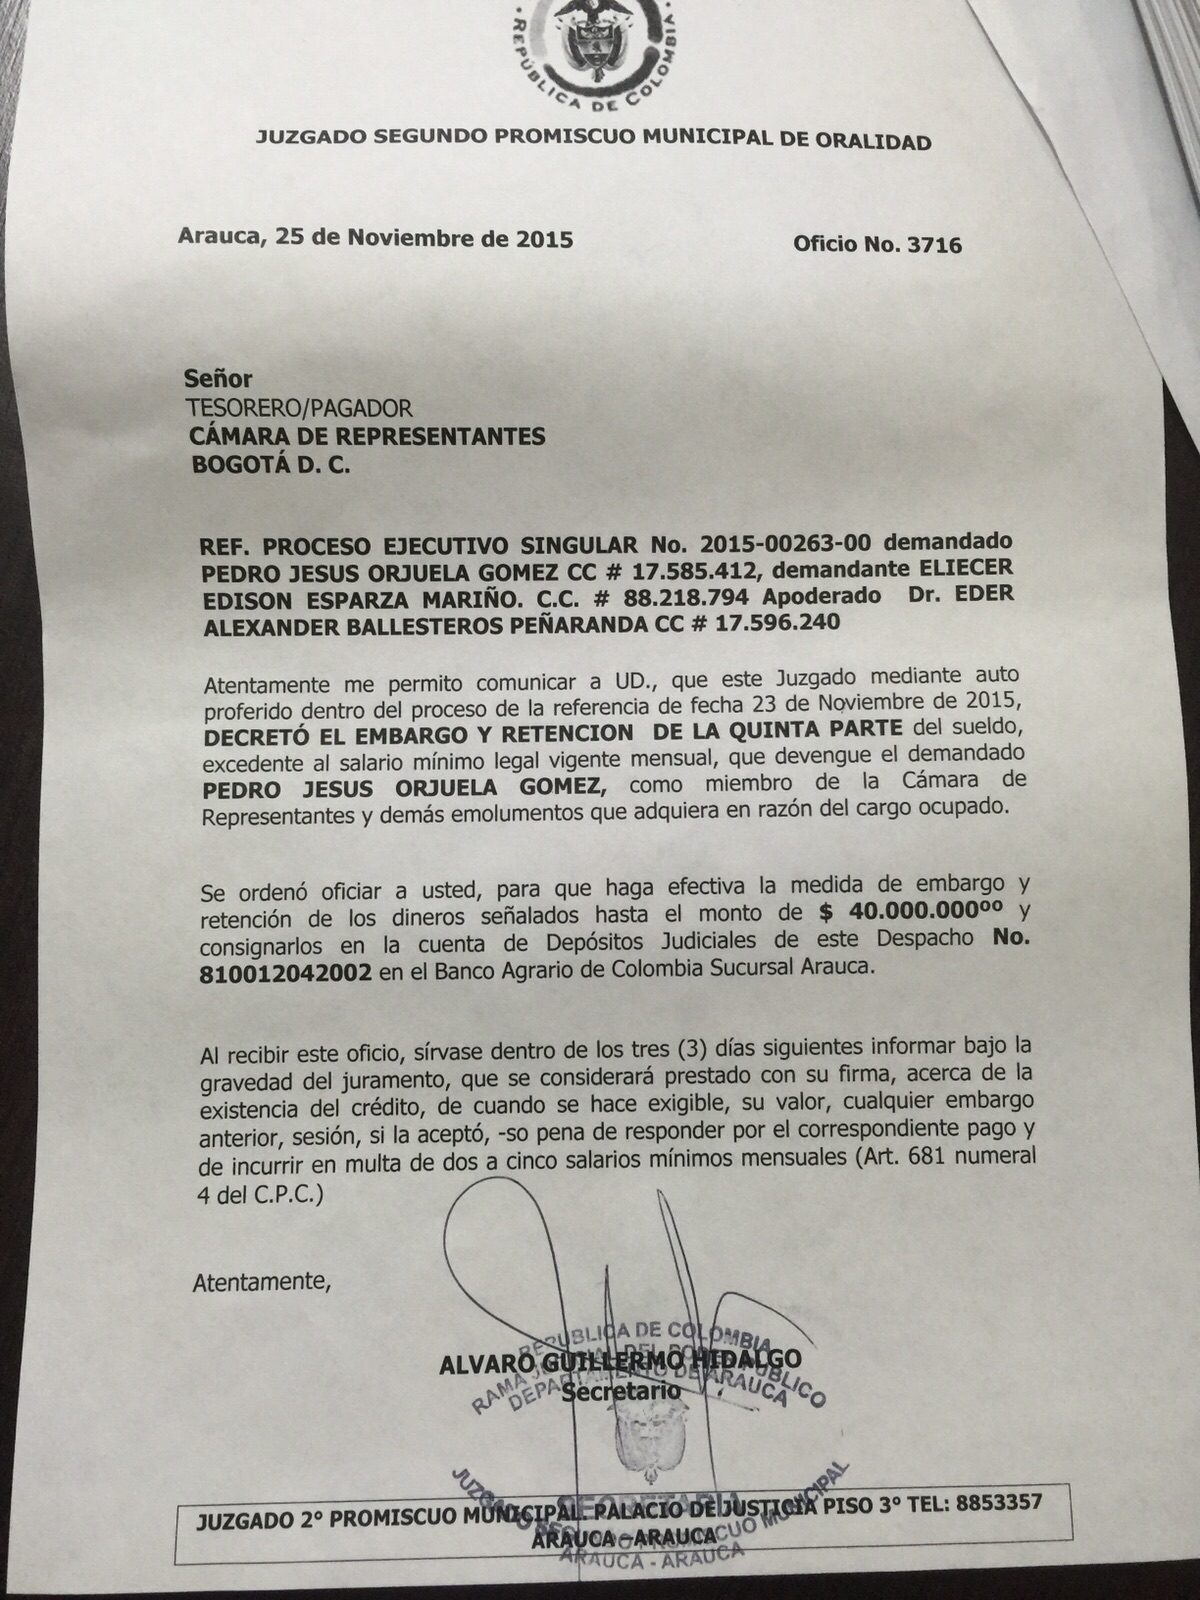  Por deuda le embargaron sueldo al Representante, Pedro Orjuela. Debe más de 20 millones de pesos.